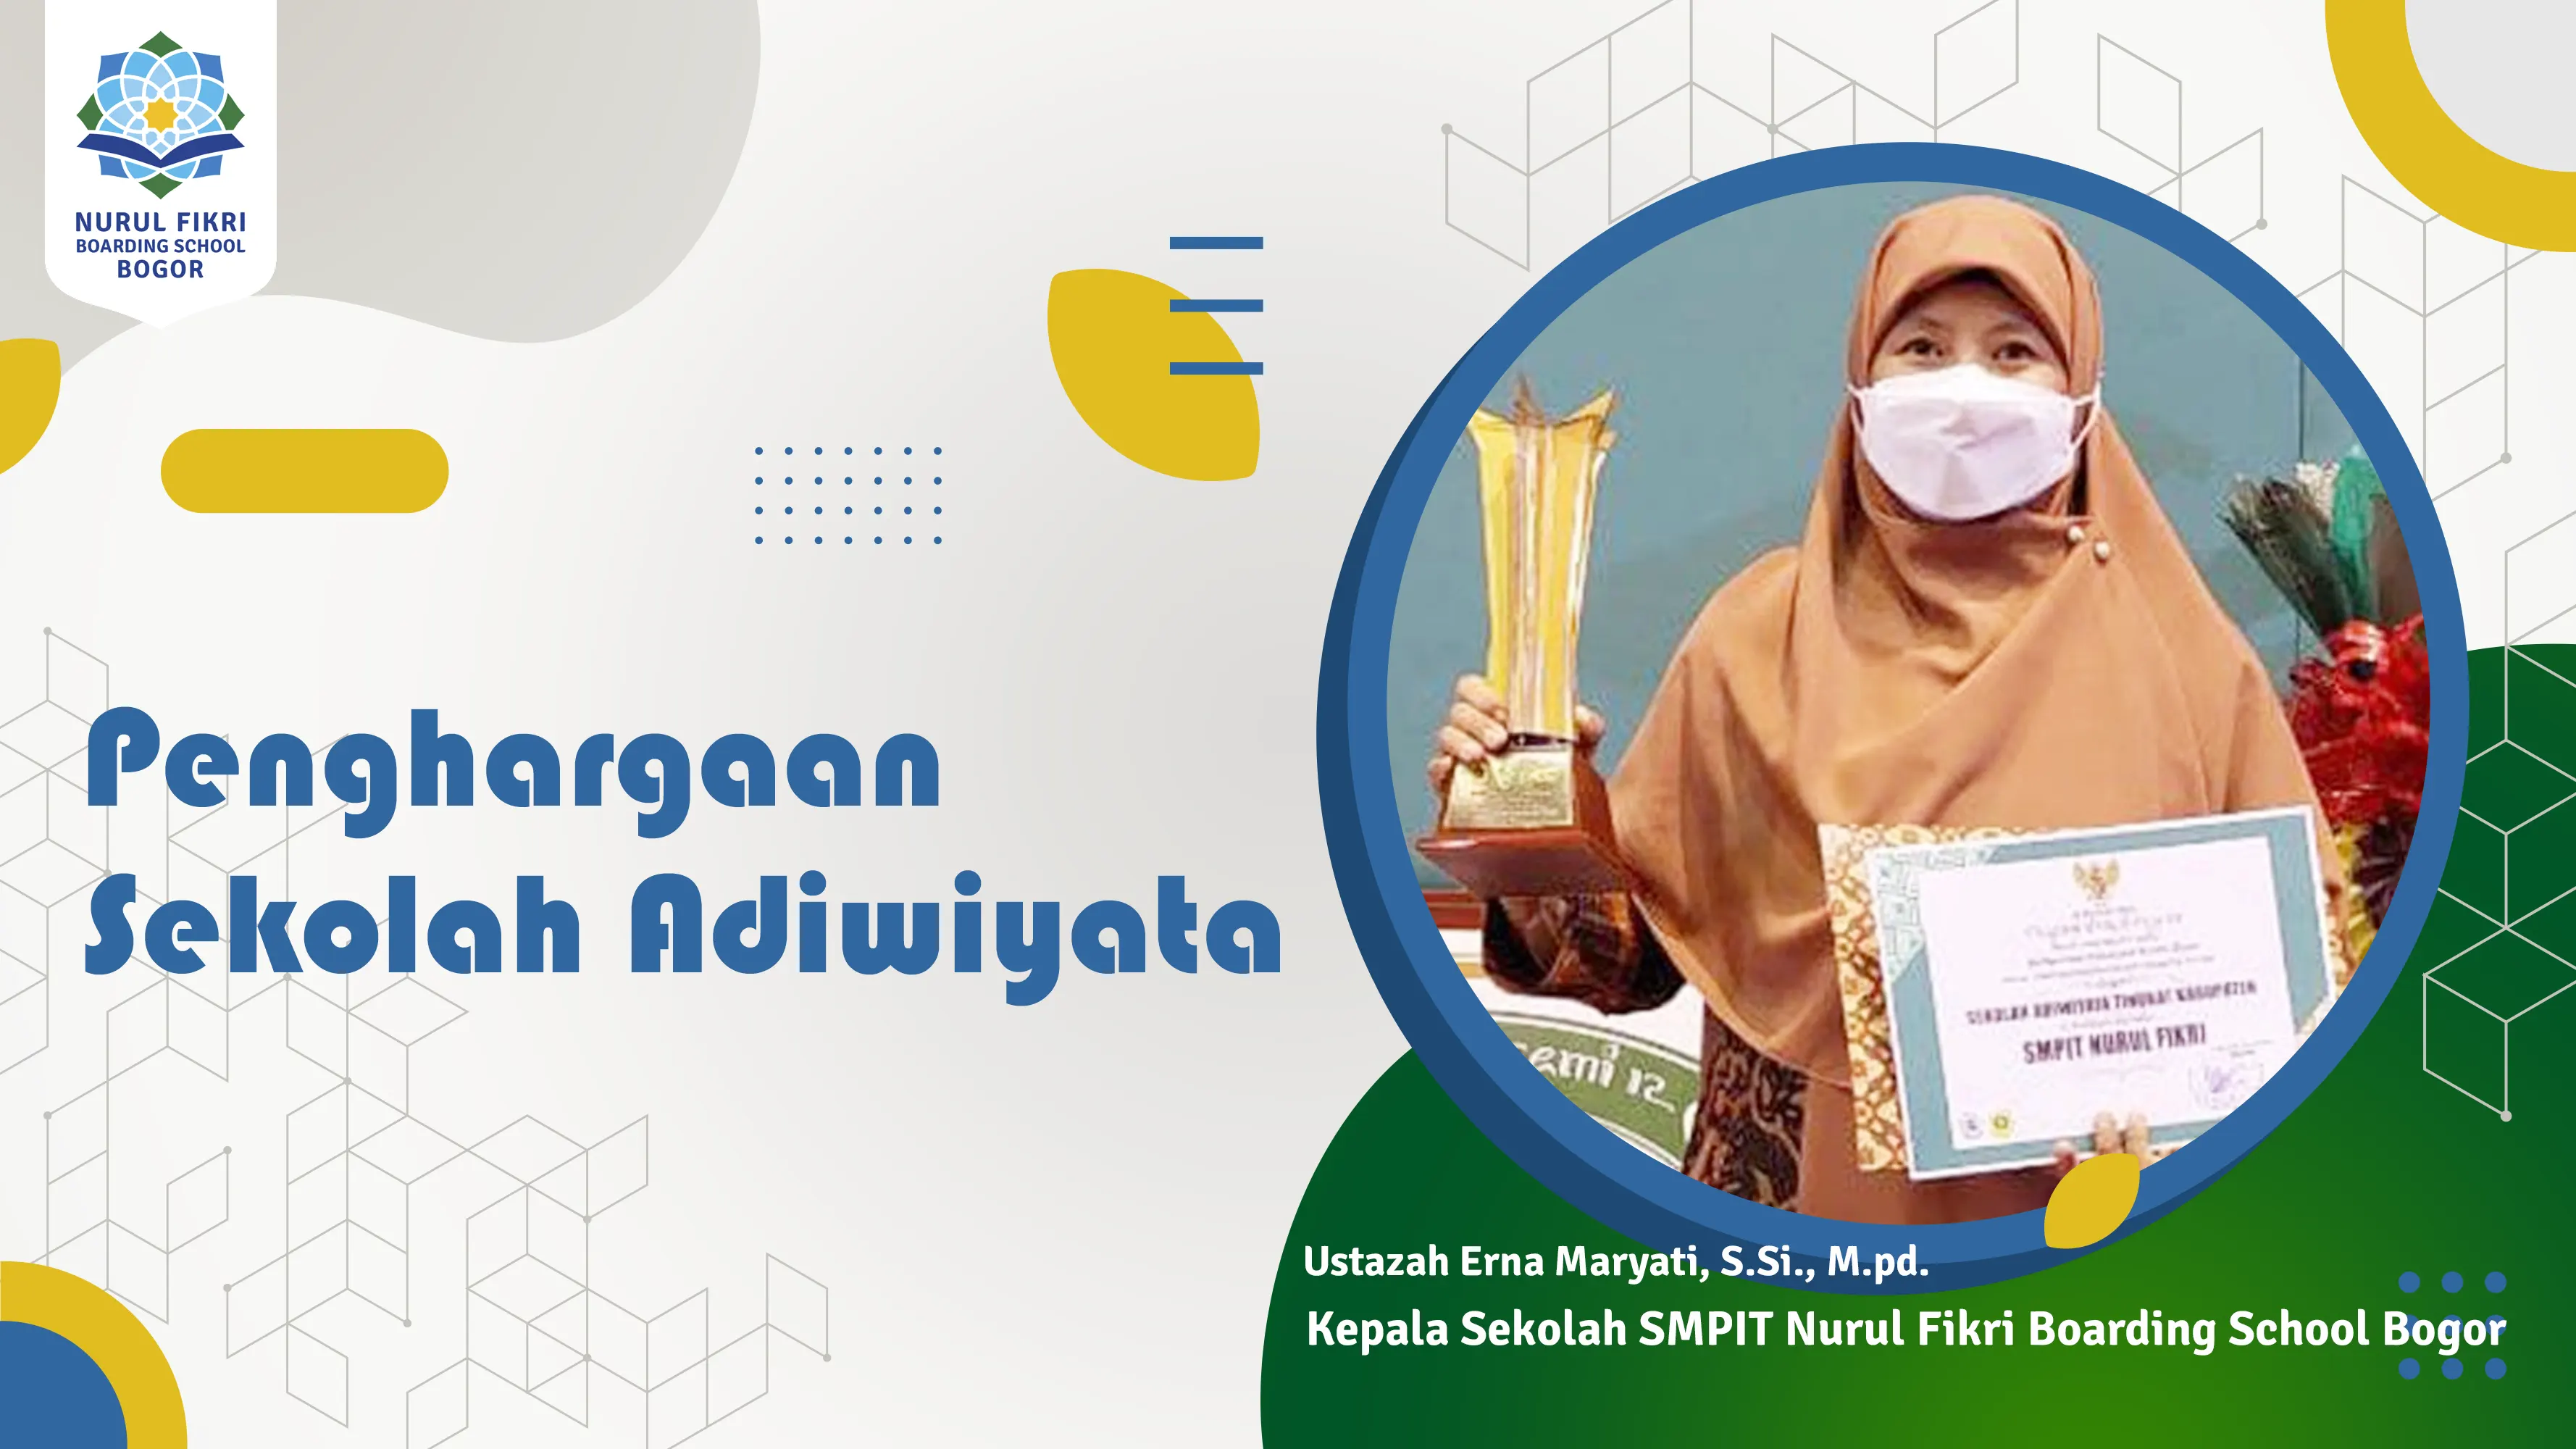 SMPIT NFBS Bogor Meraih Penghargaan Adiwiyata dari Bupati Bogor